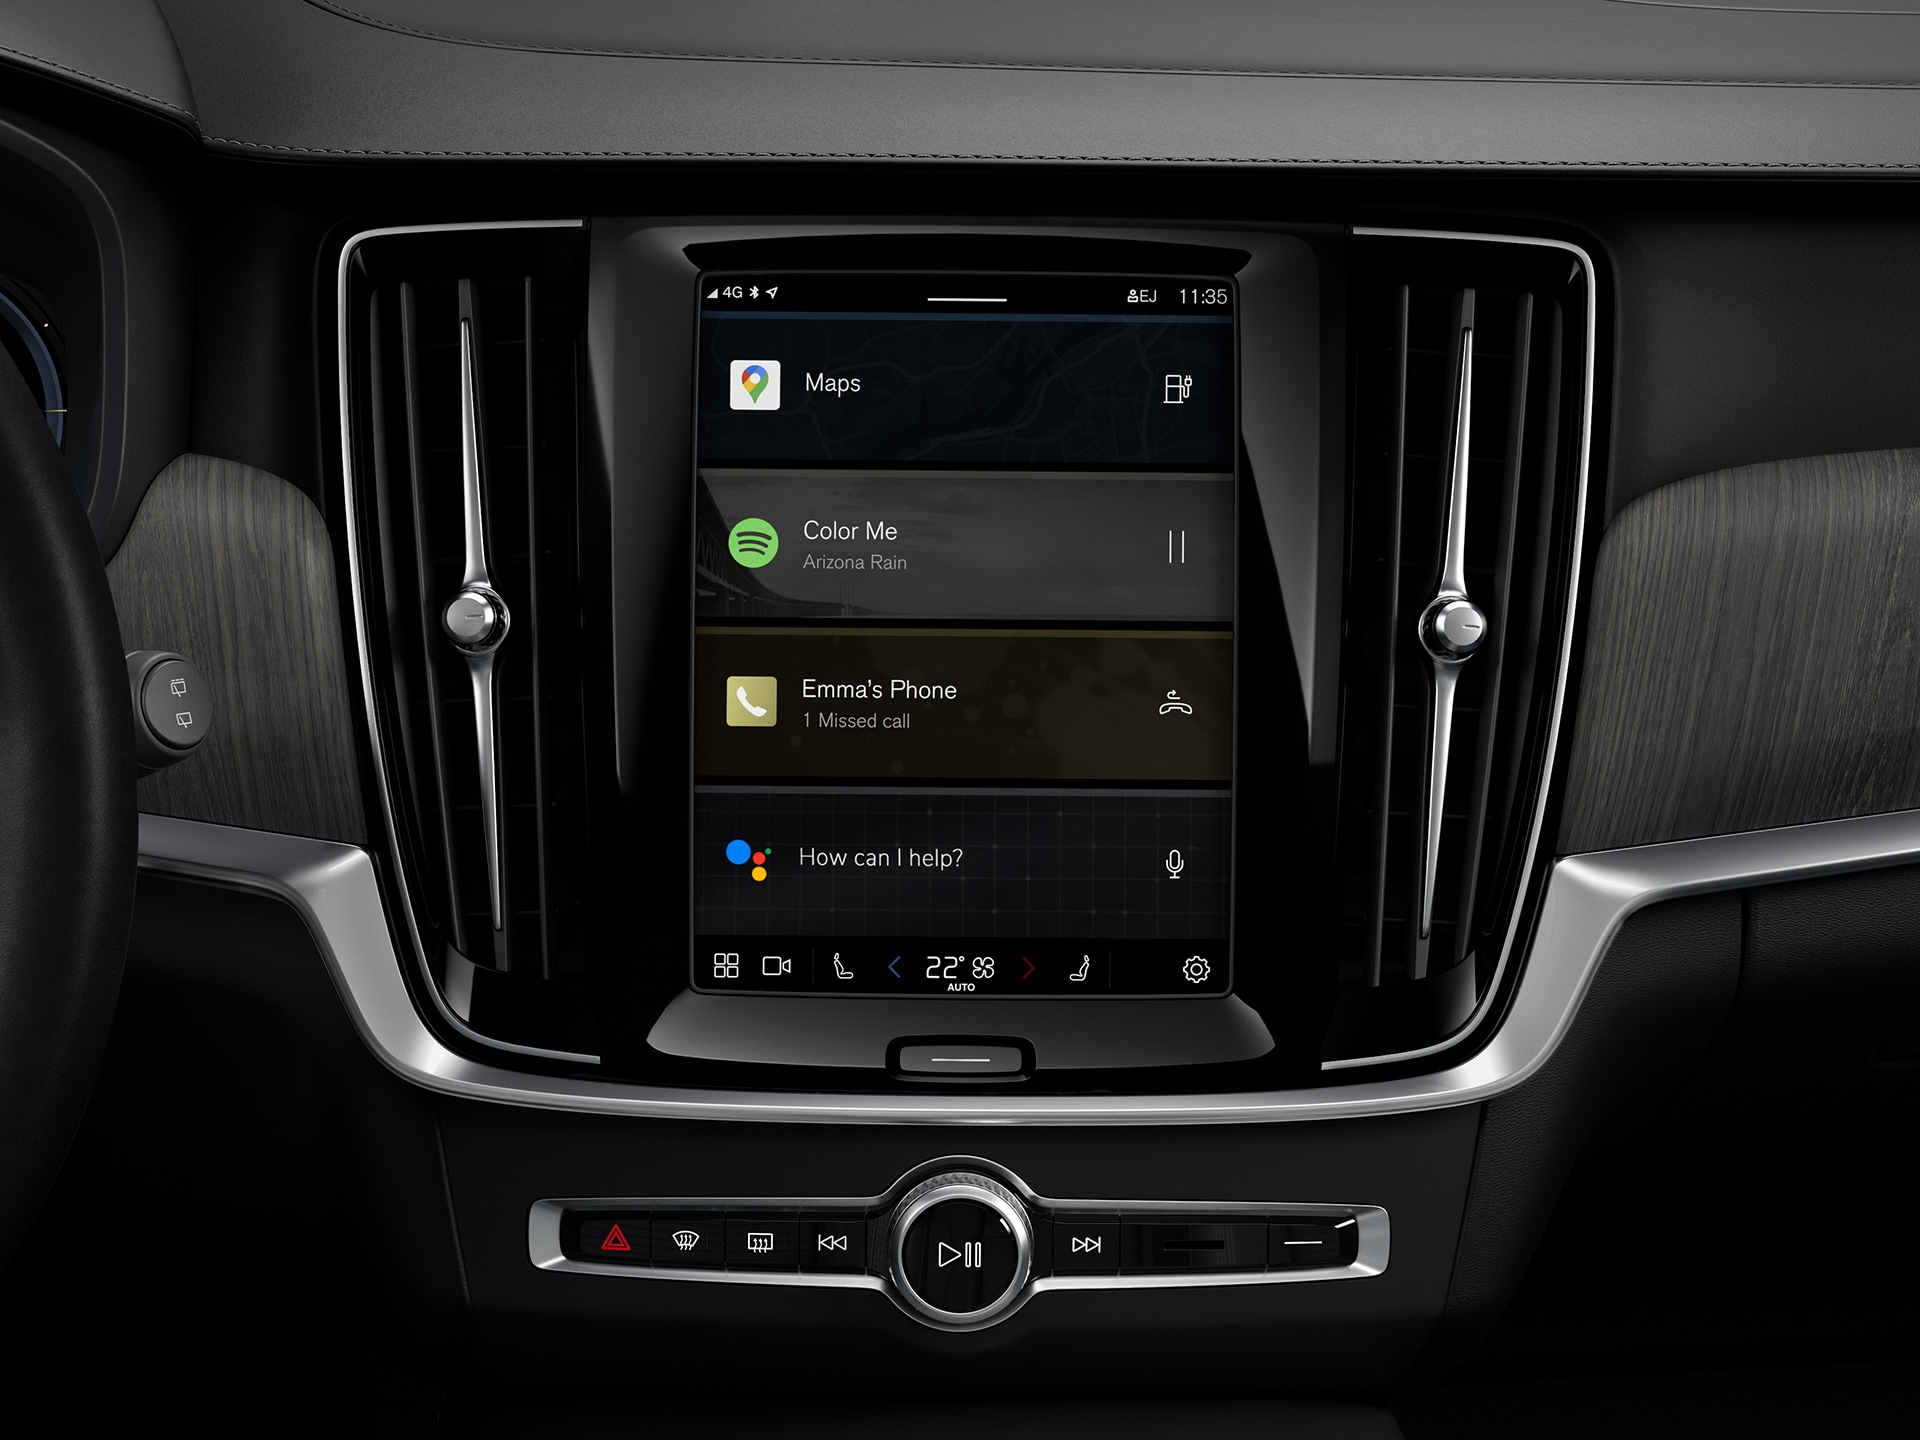 Displej stredovej konzoly v kombi Volvo s integrovaným informačno-zábavným systémom Google.